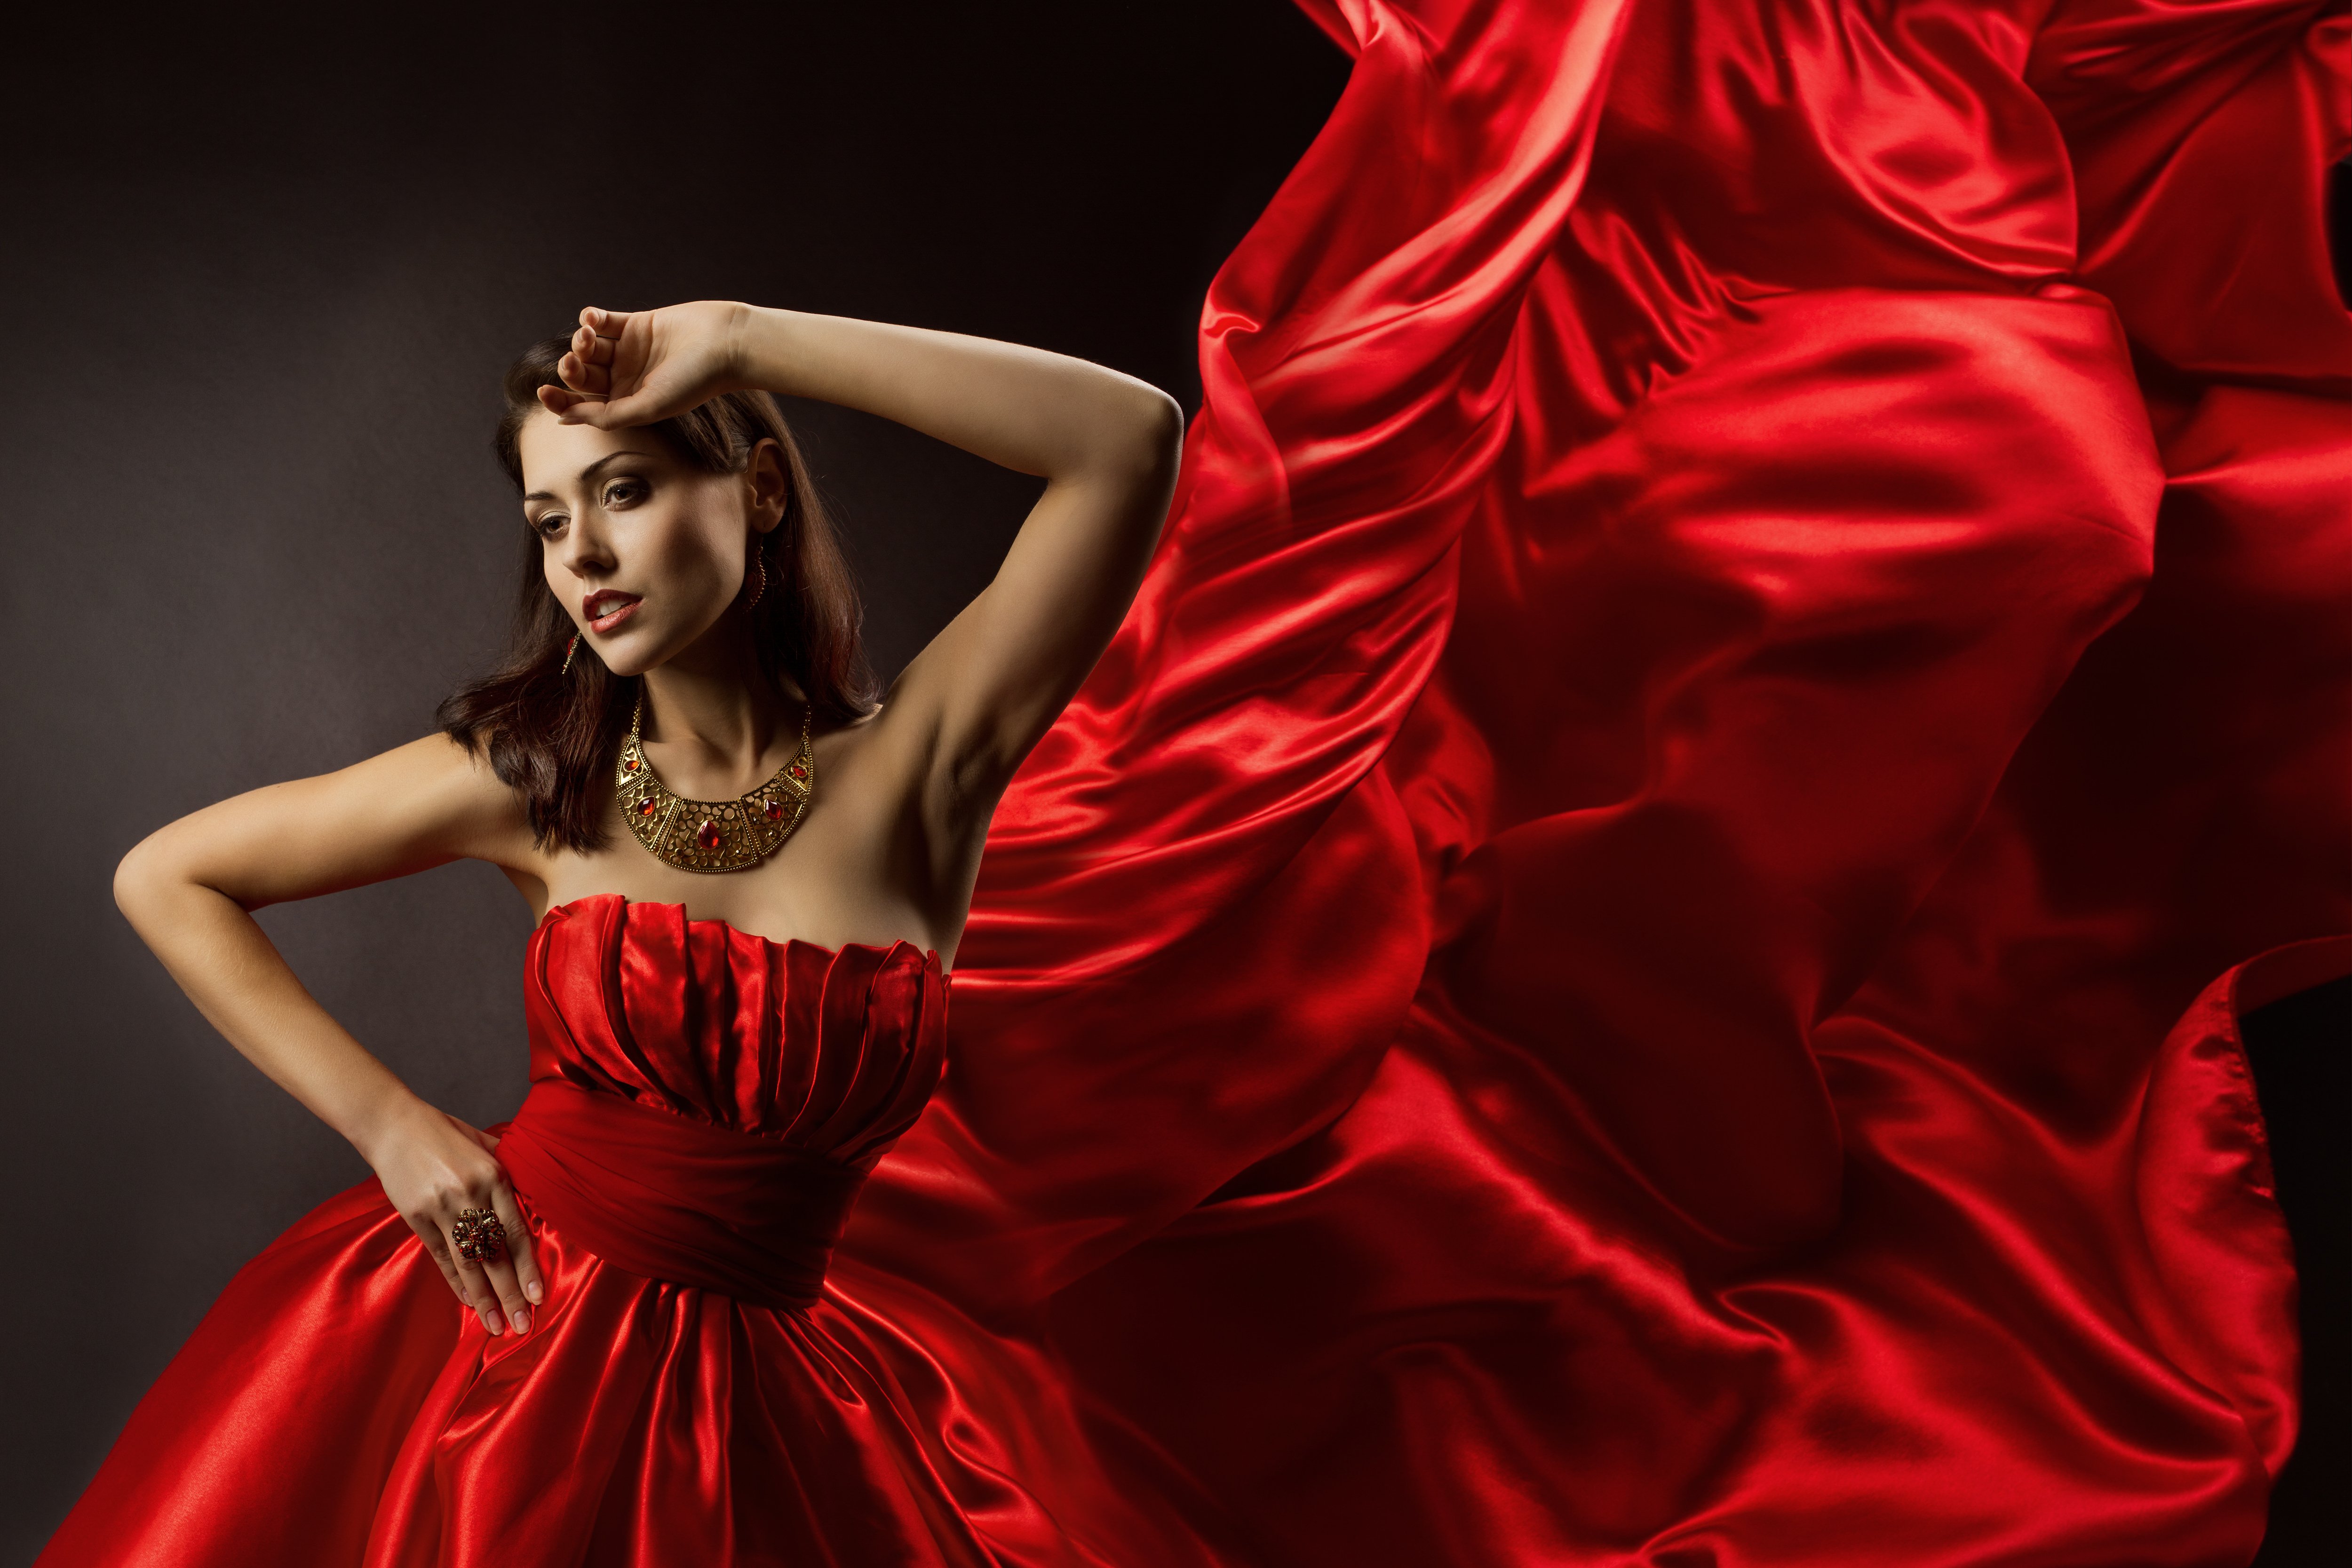 Картинка обои красная. Девока в красивом платье. Девушка в красивом аовтье. Красивое красное платье.